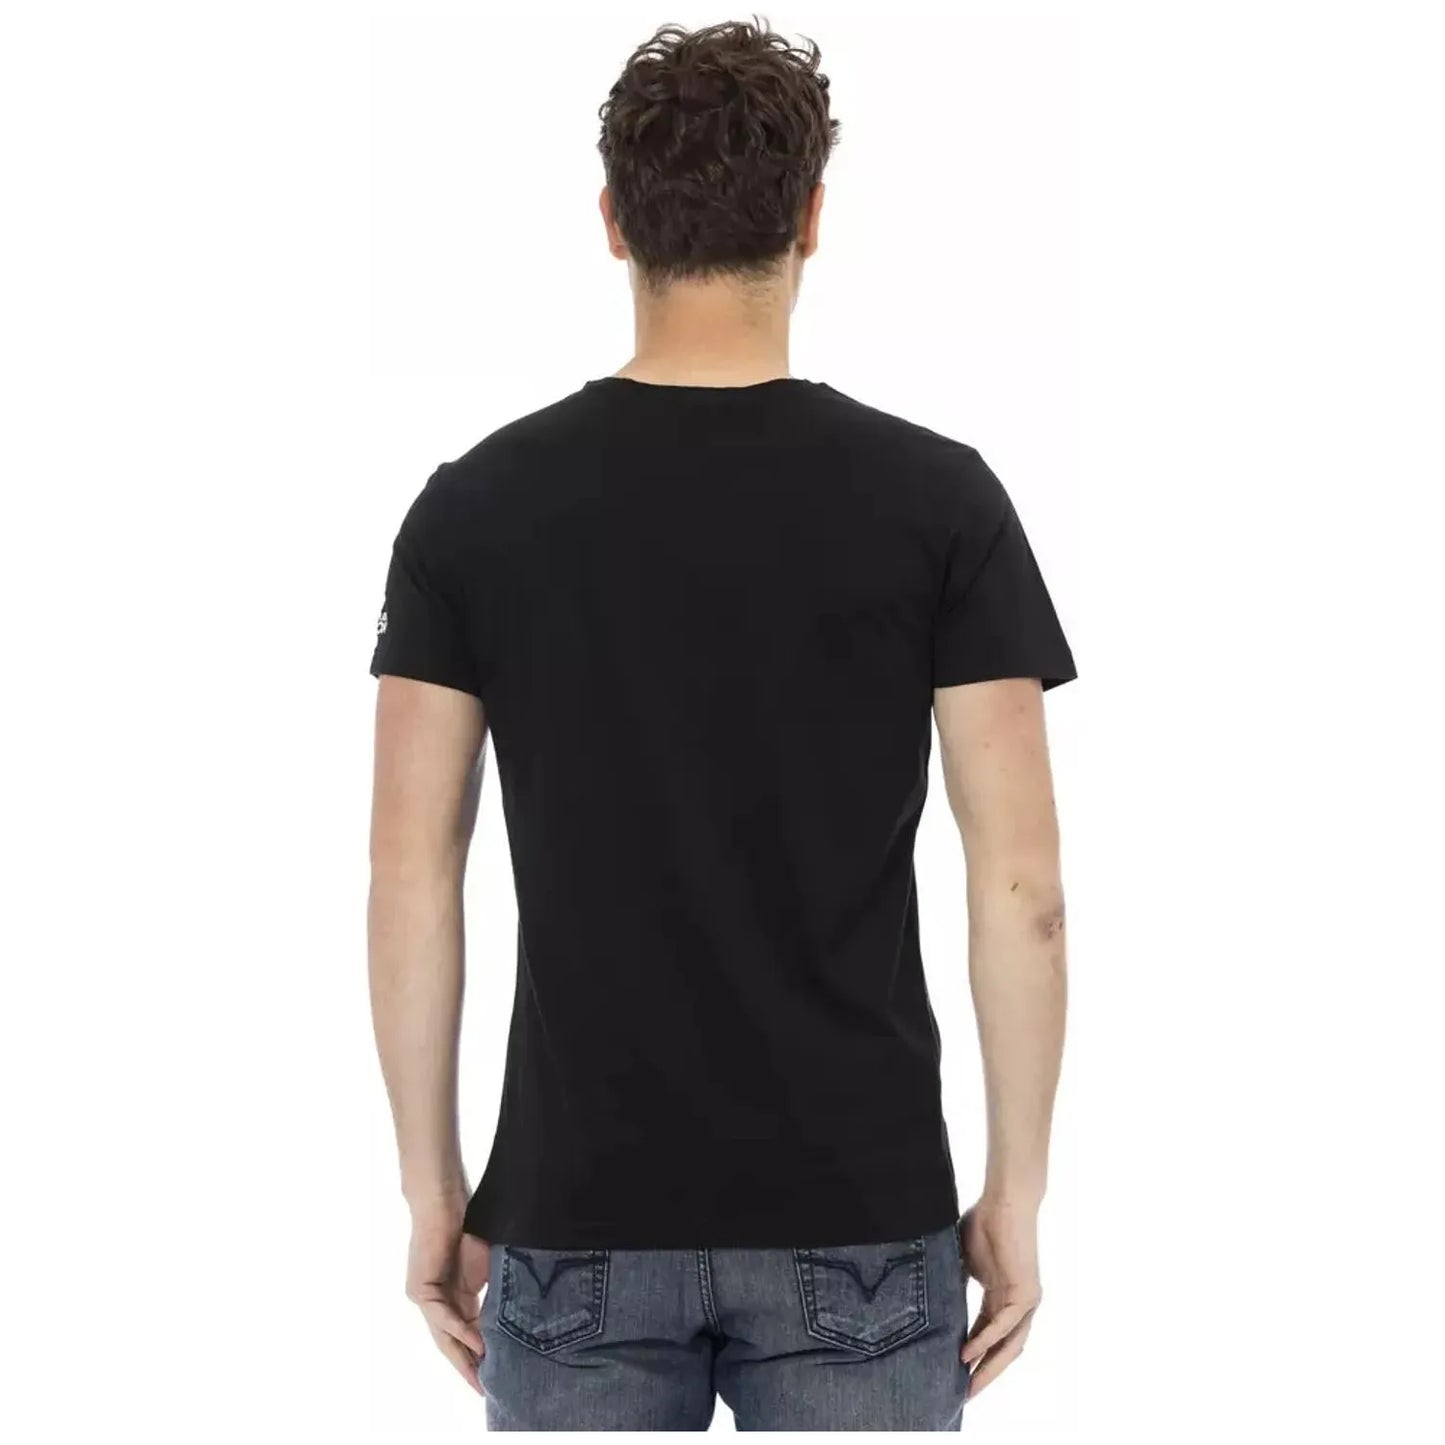 Trussardi Action Sleek Cotton-Blend Round Neck Tee black-cotton-t-shirt-74